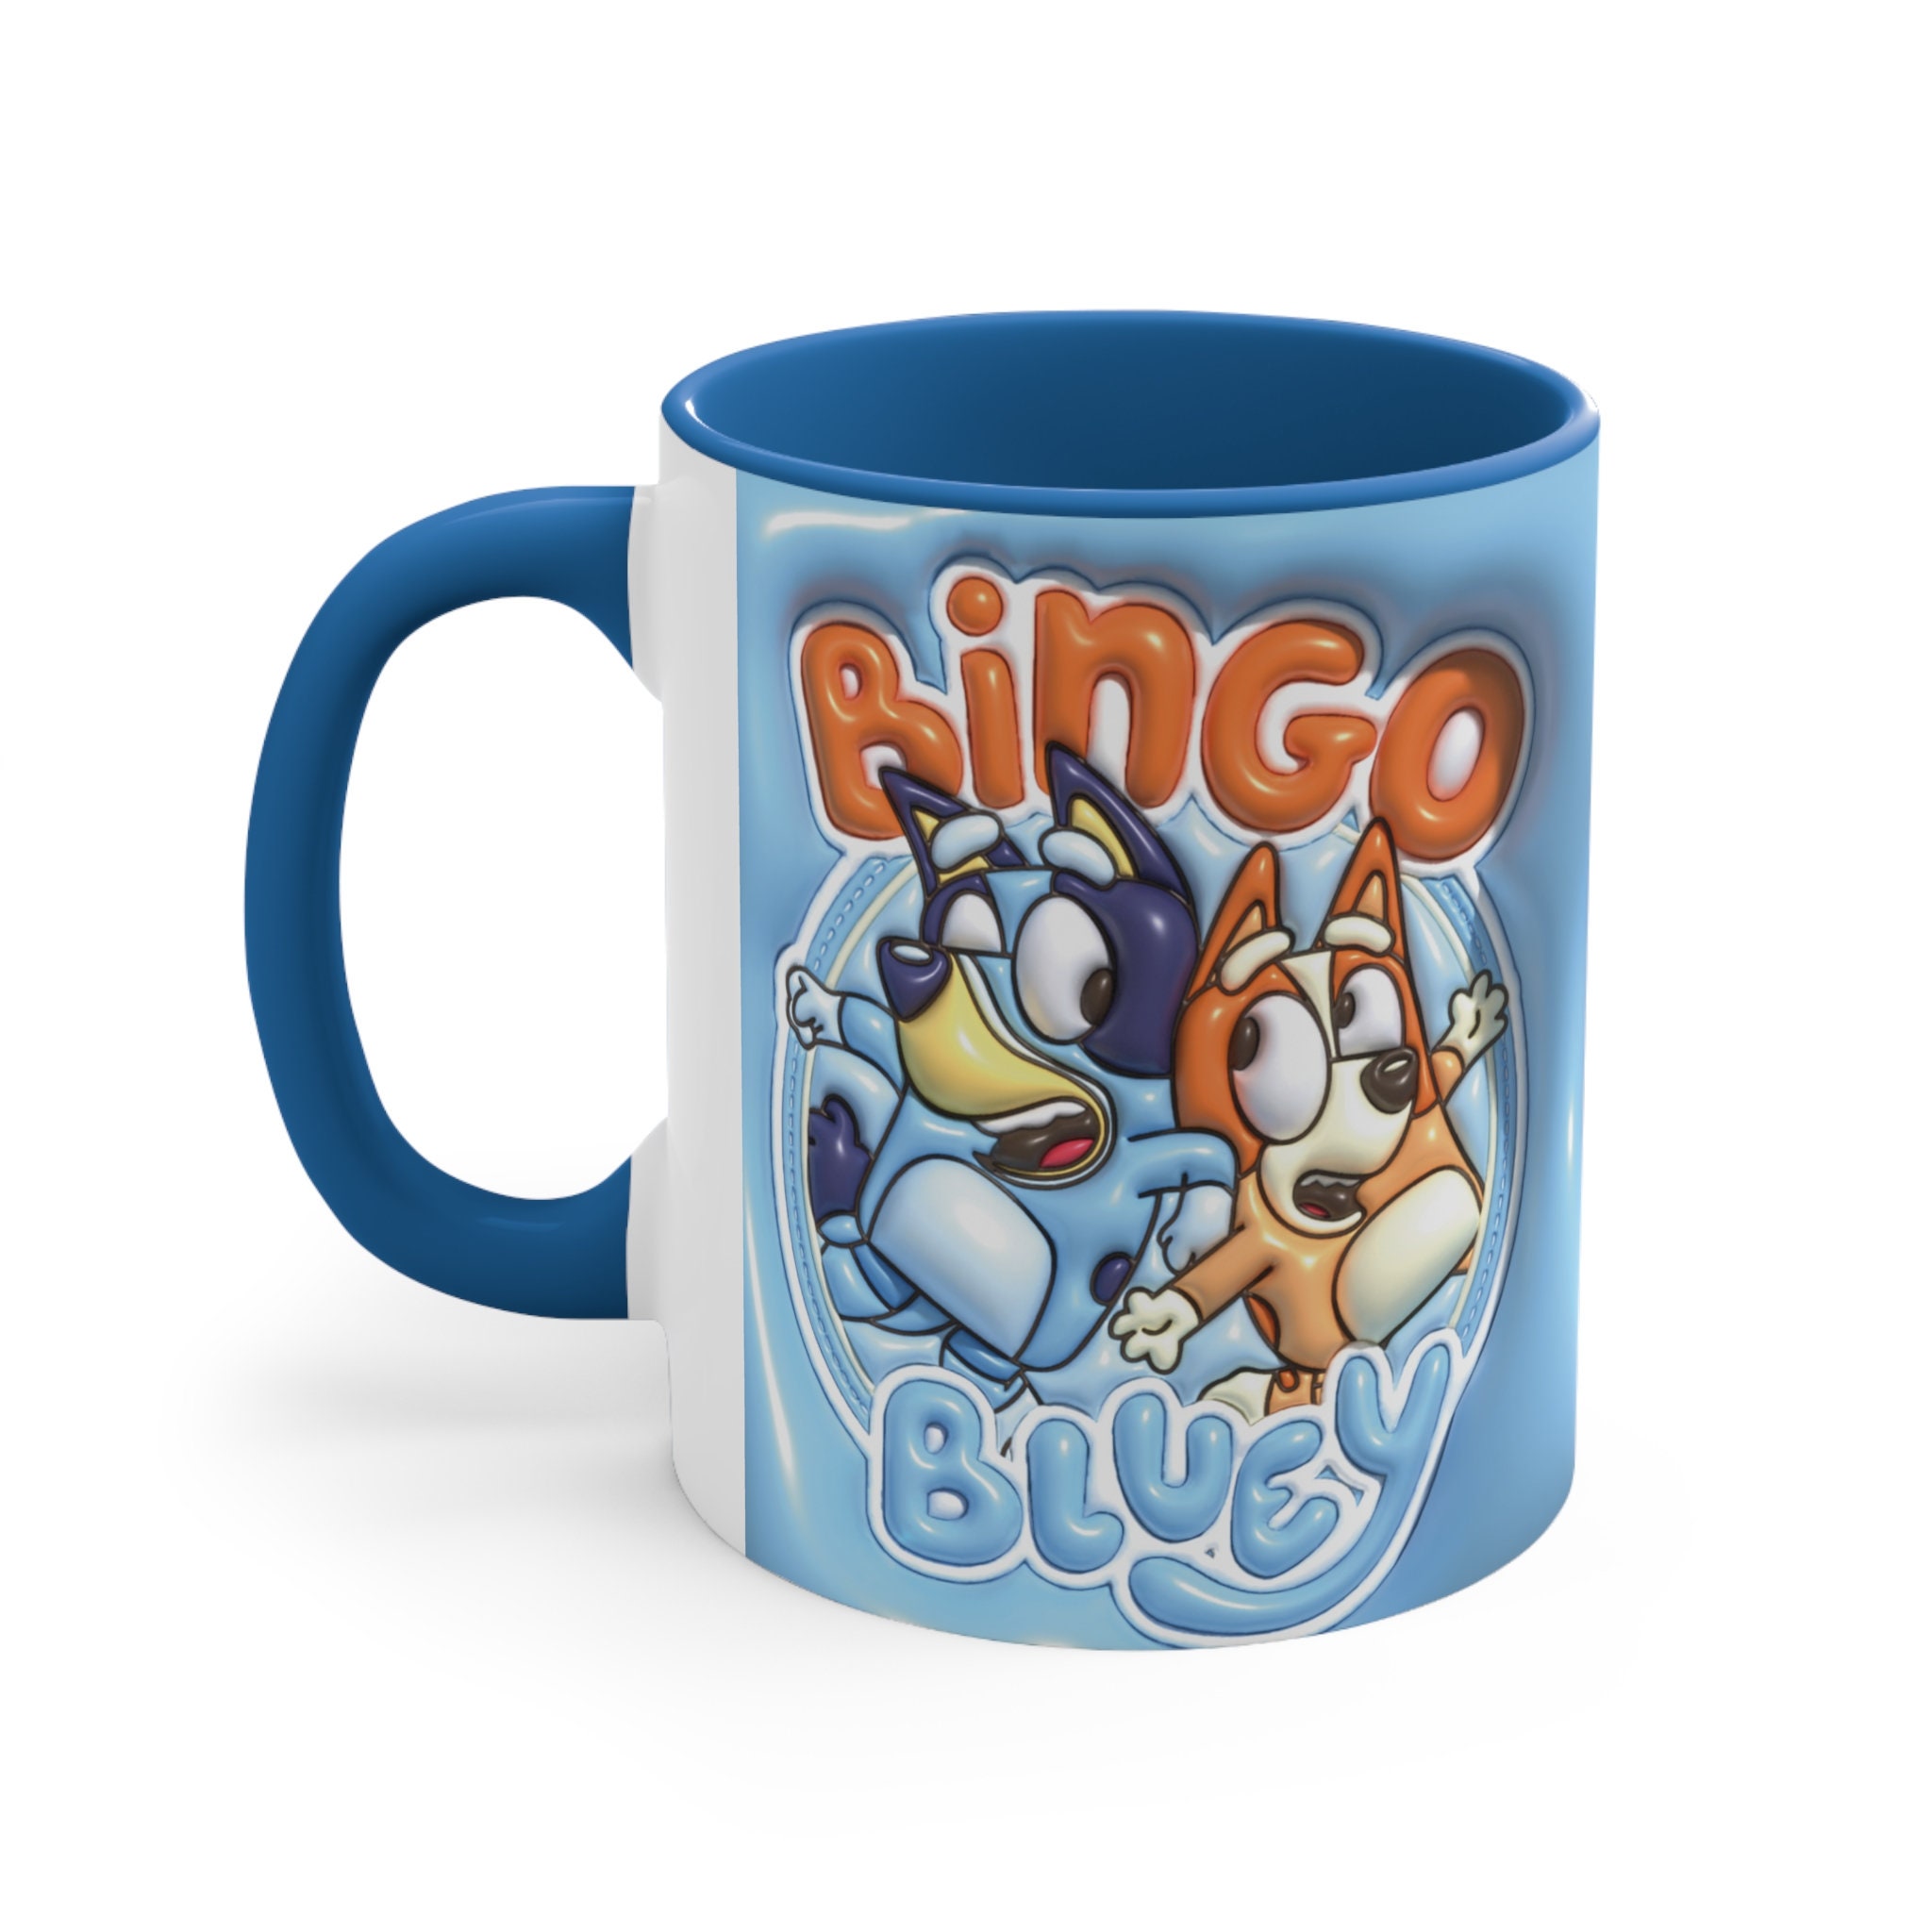 Eat Your Floor Cereal Bluey Mug Bandit Bluey Bluey Mom Bluey Dad Coffee Cup  Coffee Mug 